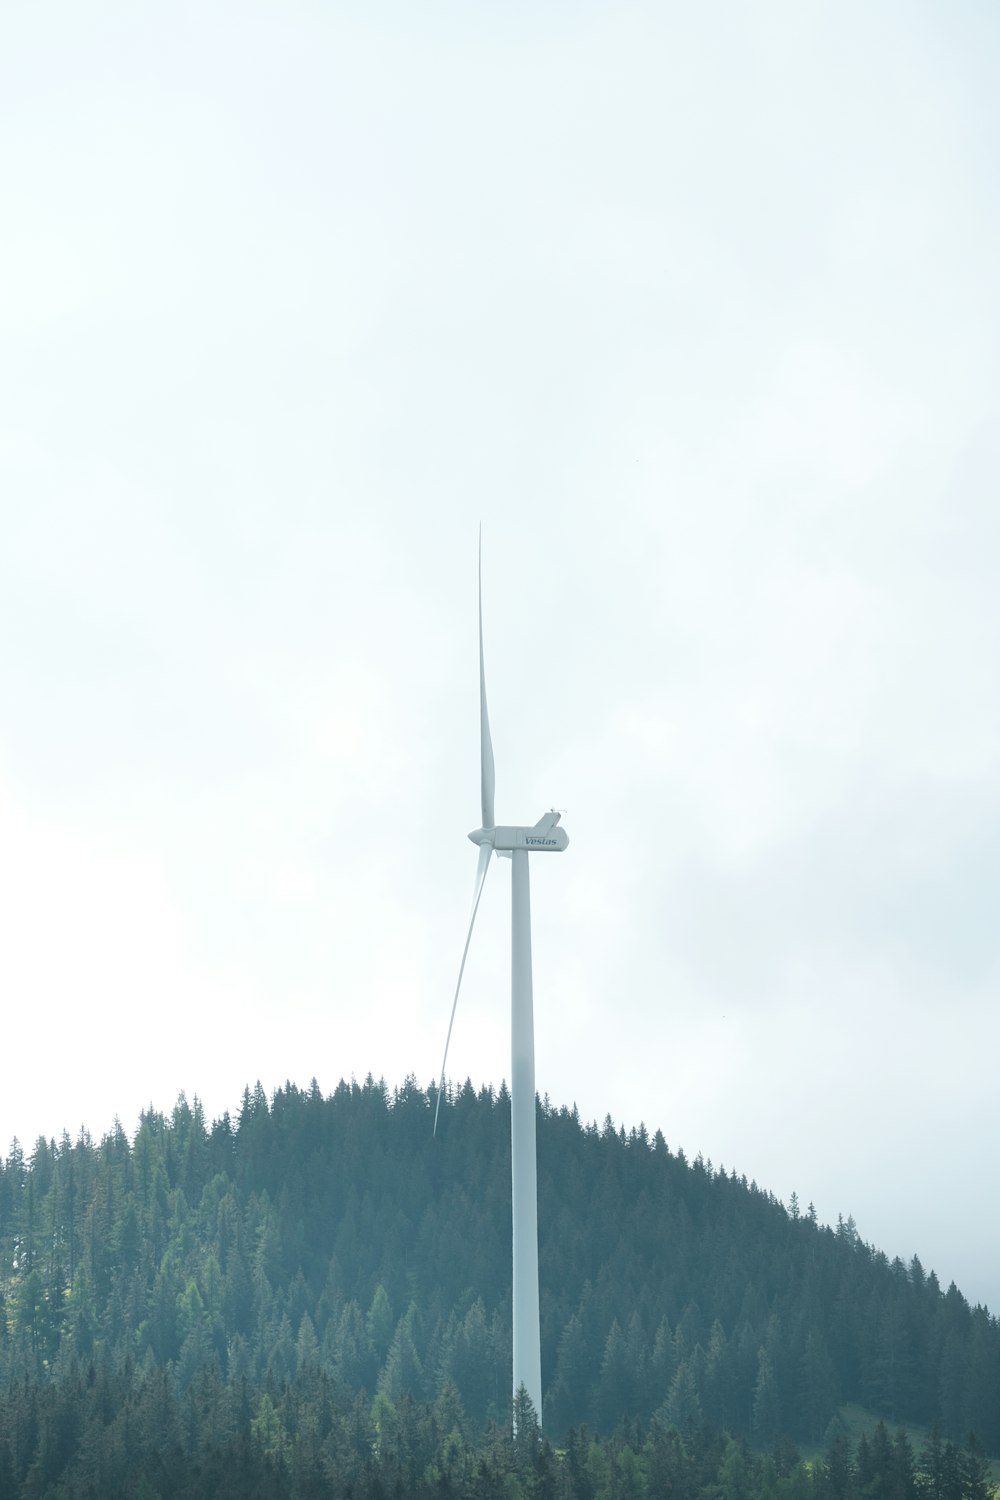 Una turbina eólica en una colina con árboles al fondo